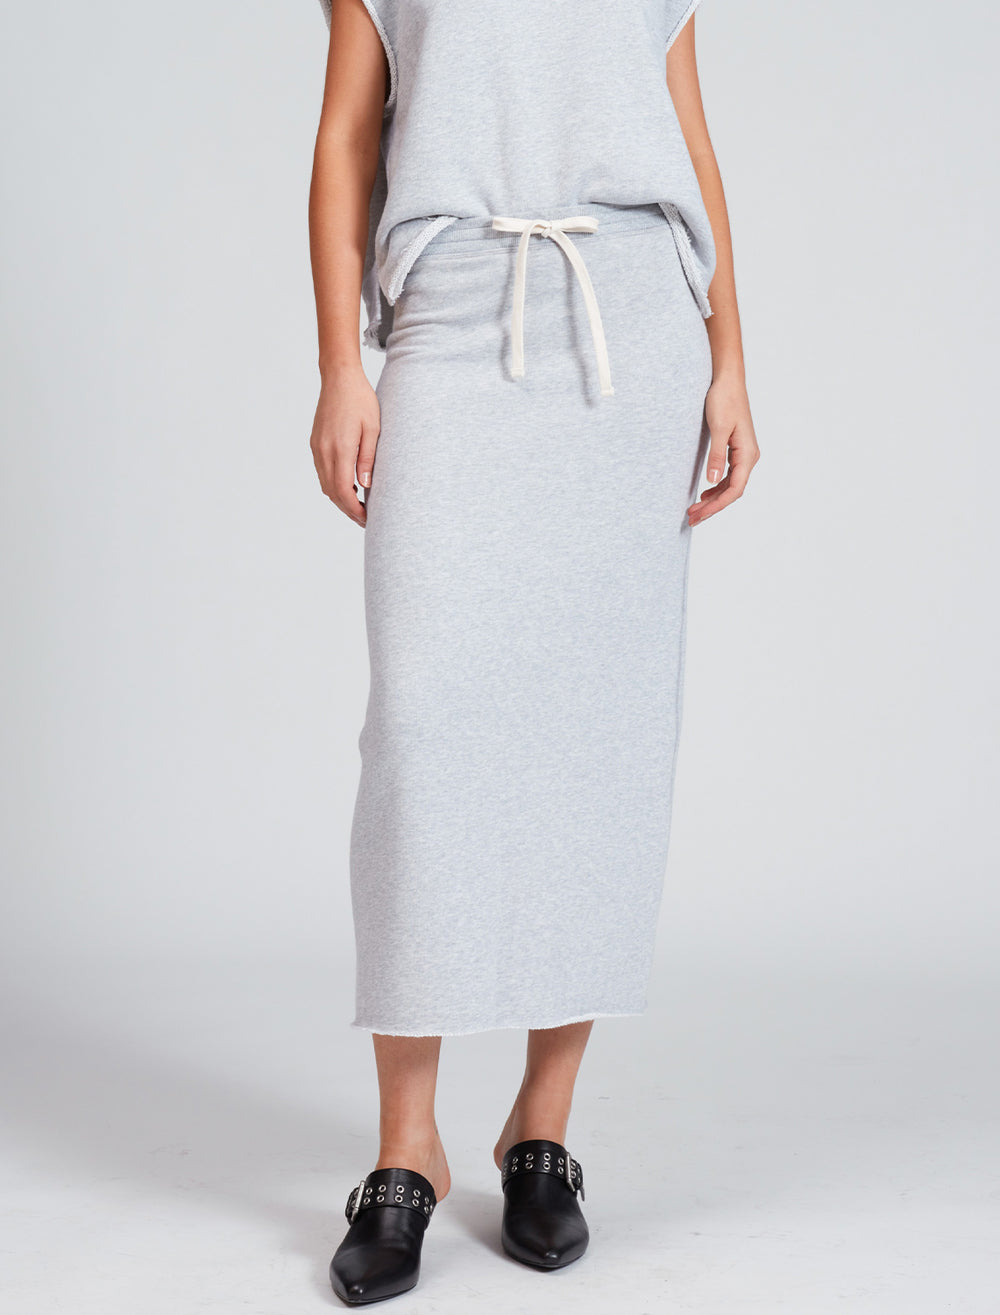 Model wearing Rag & Bone's vintage terry midi skirt in heather grey.